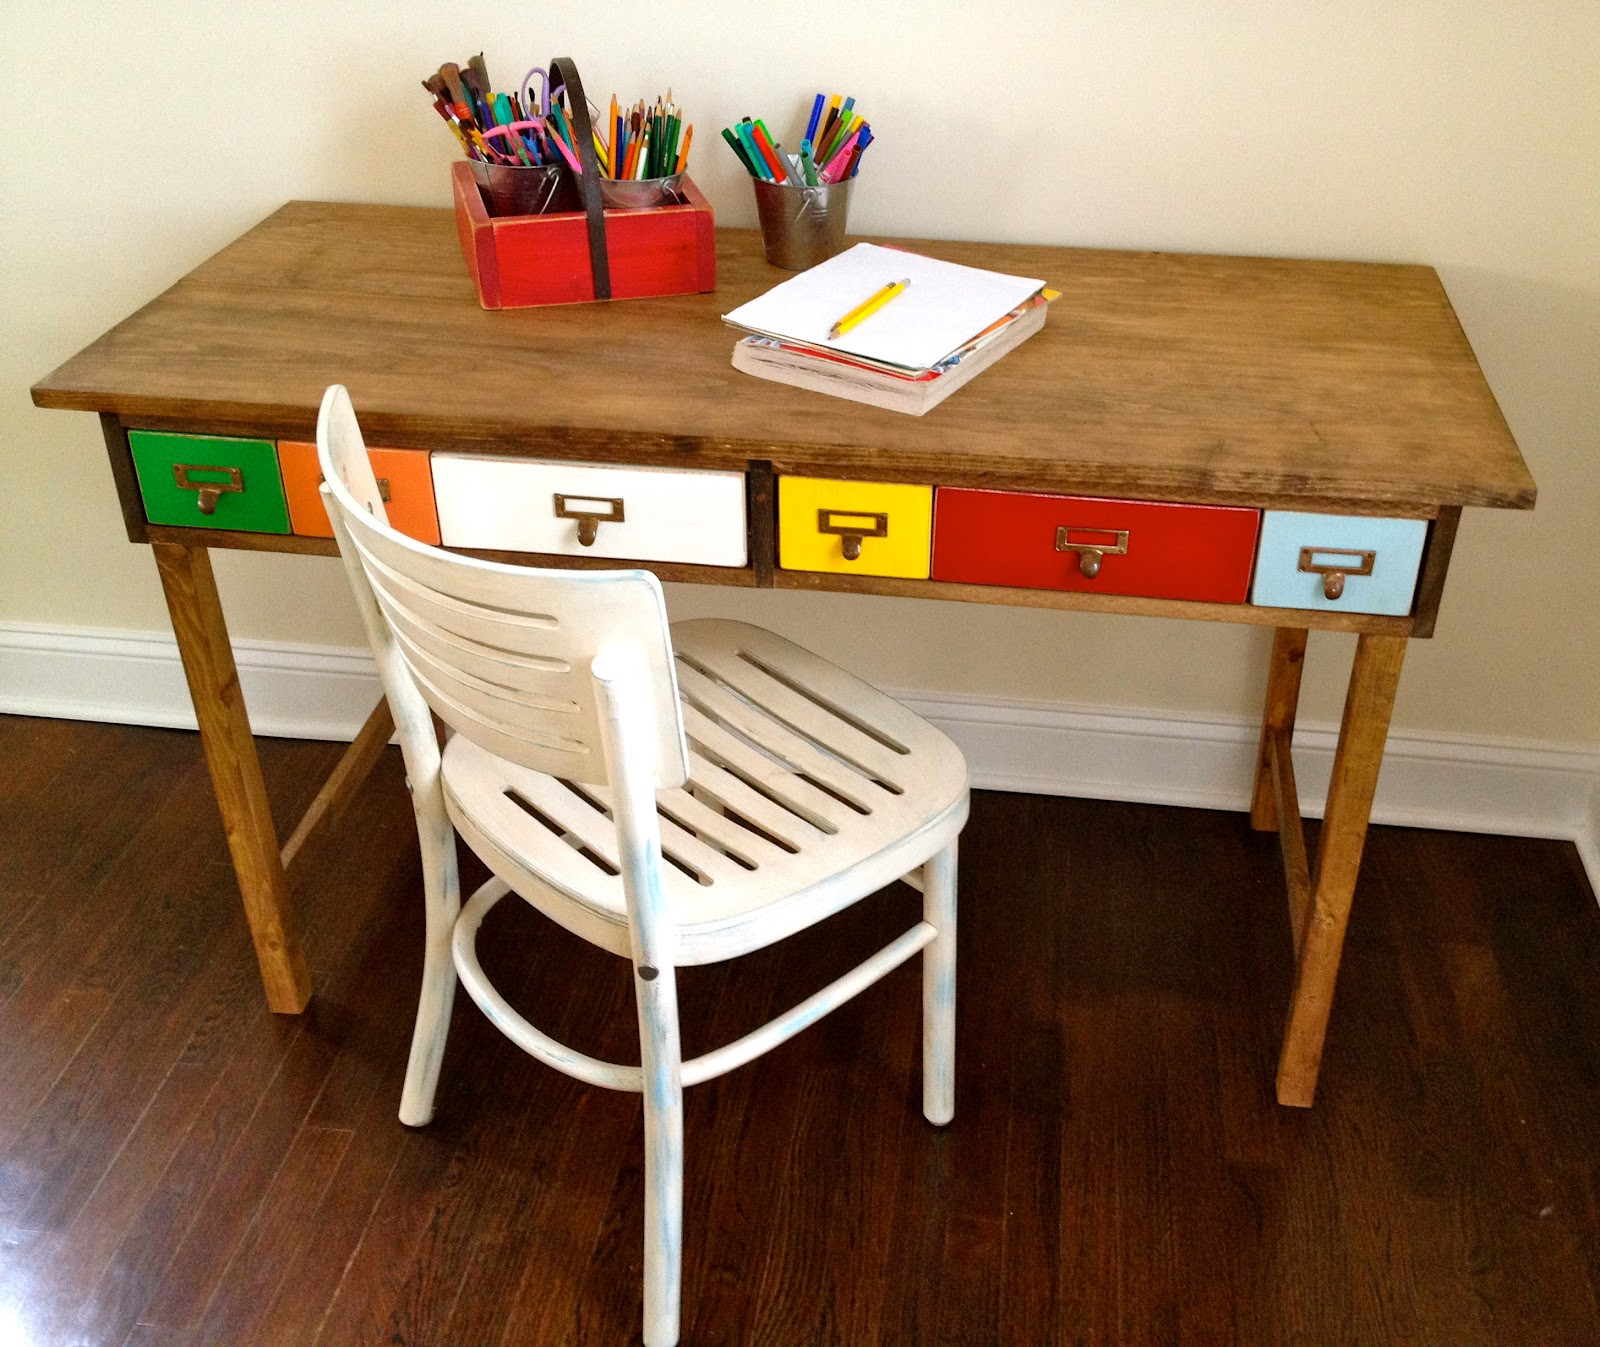 DIY Kids Desk Plans
 That s My Letter DIY Kids Desk with Multi Color Drawers